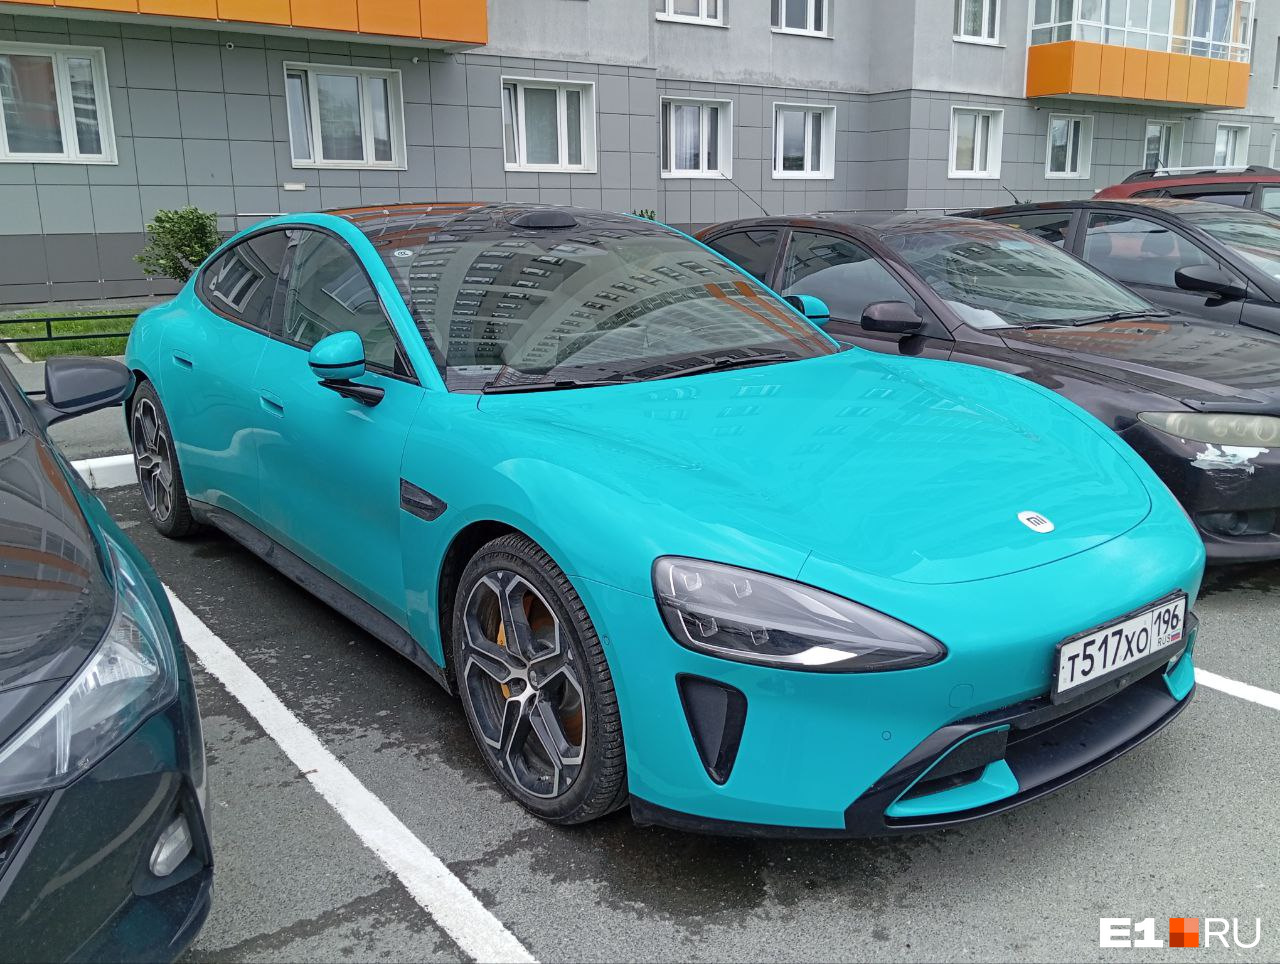 Брат твоего пылесоса: в Екатеринбурге заметили новейший электромобиль от конкурента Tesla